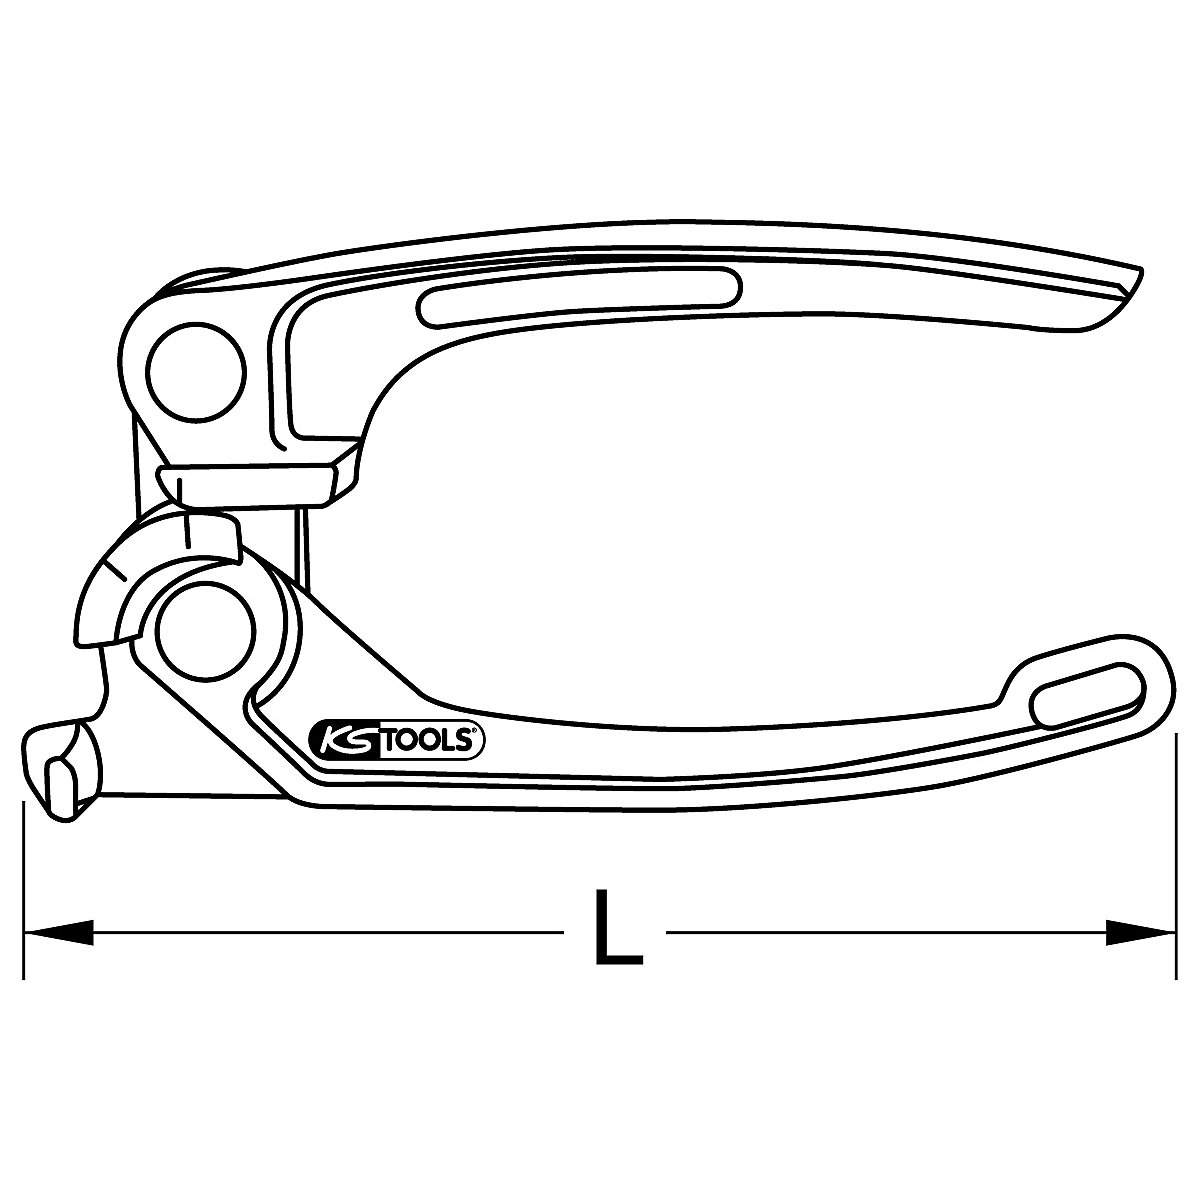 Mini Bremsleitungs-Biege-Werkzeug KS Tools: metrisch